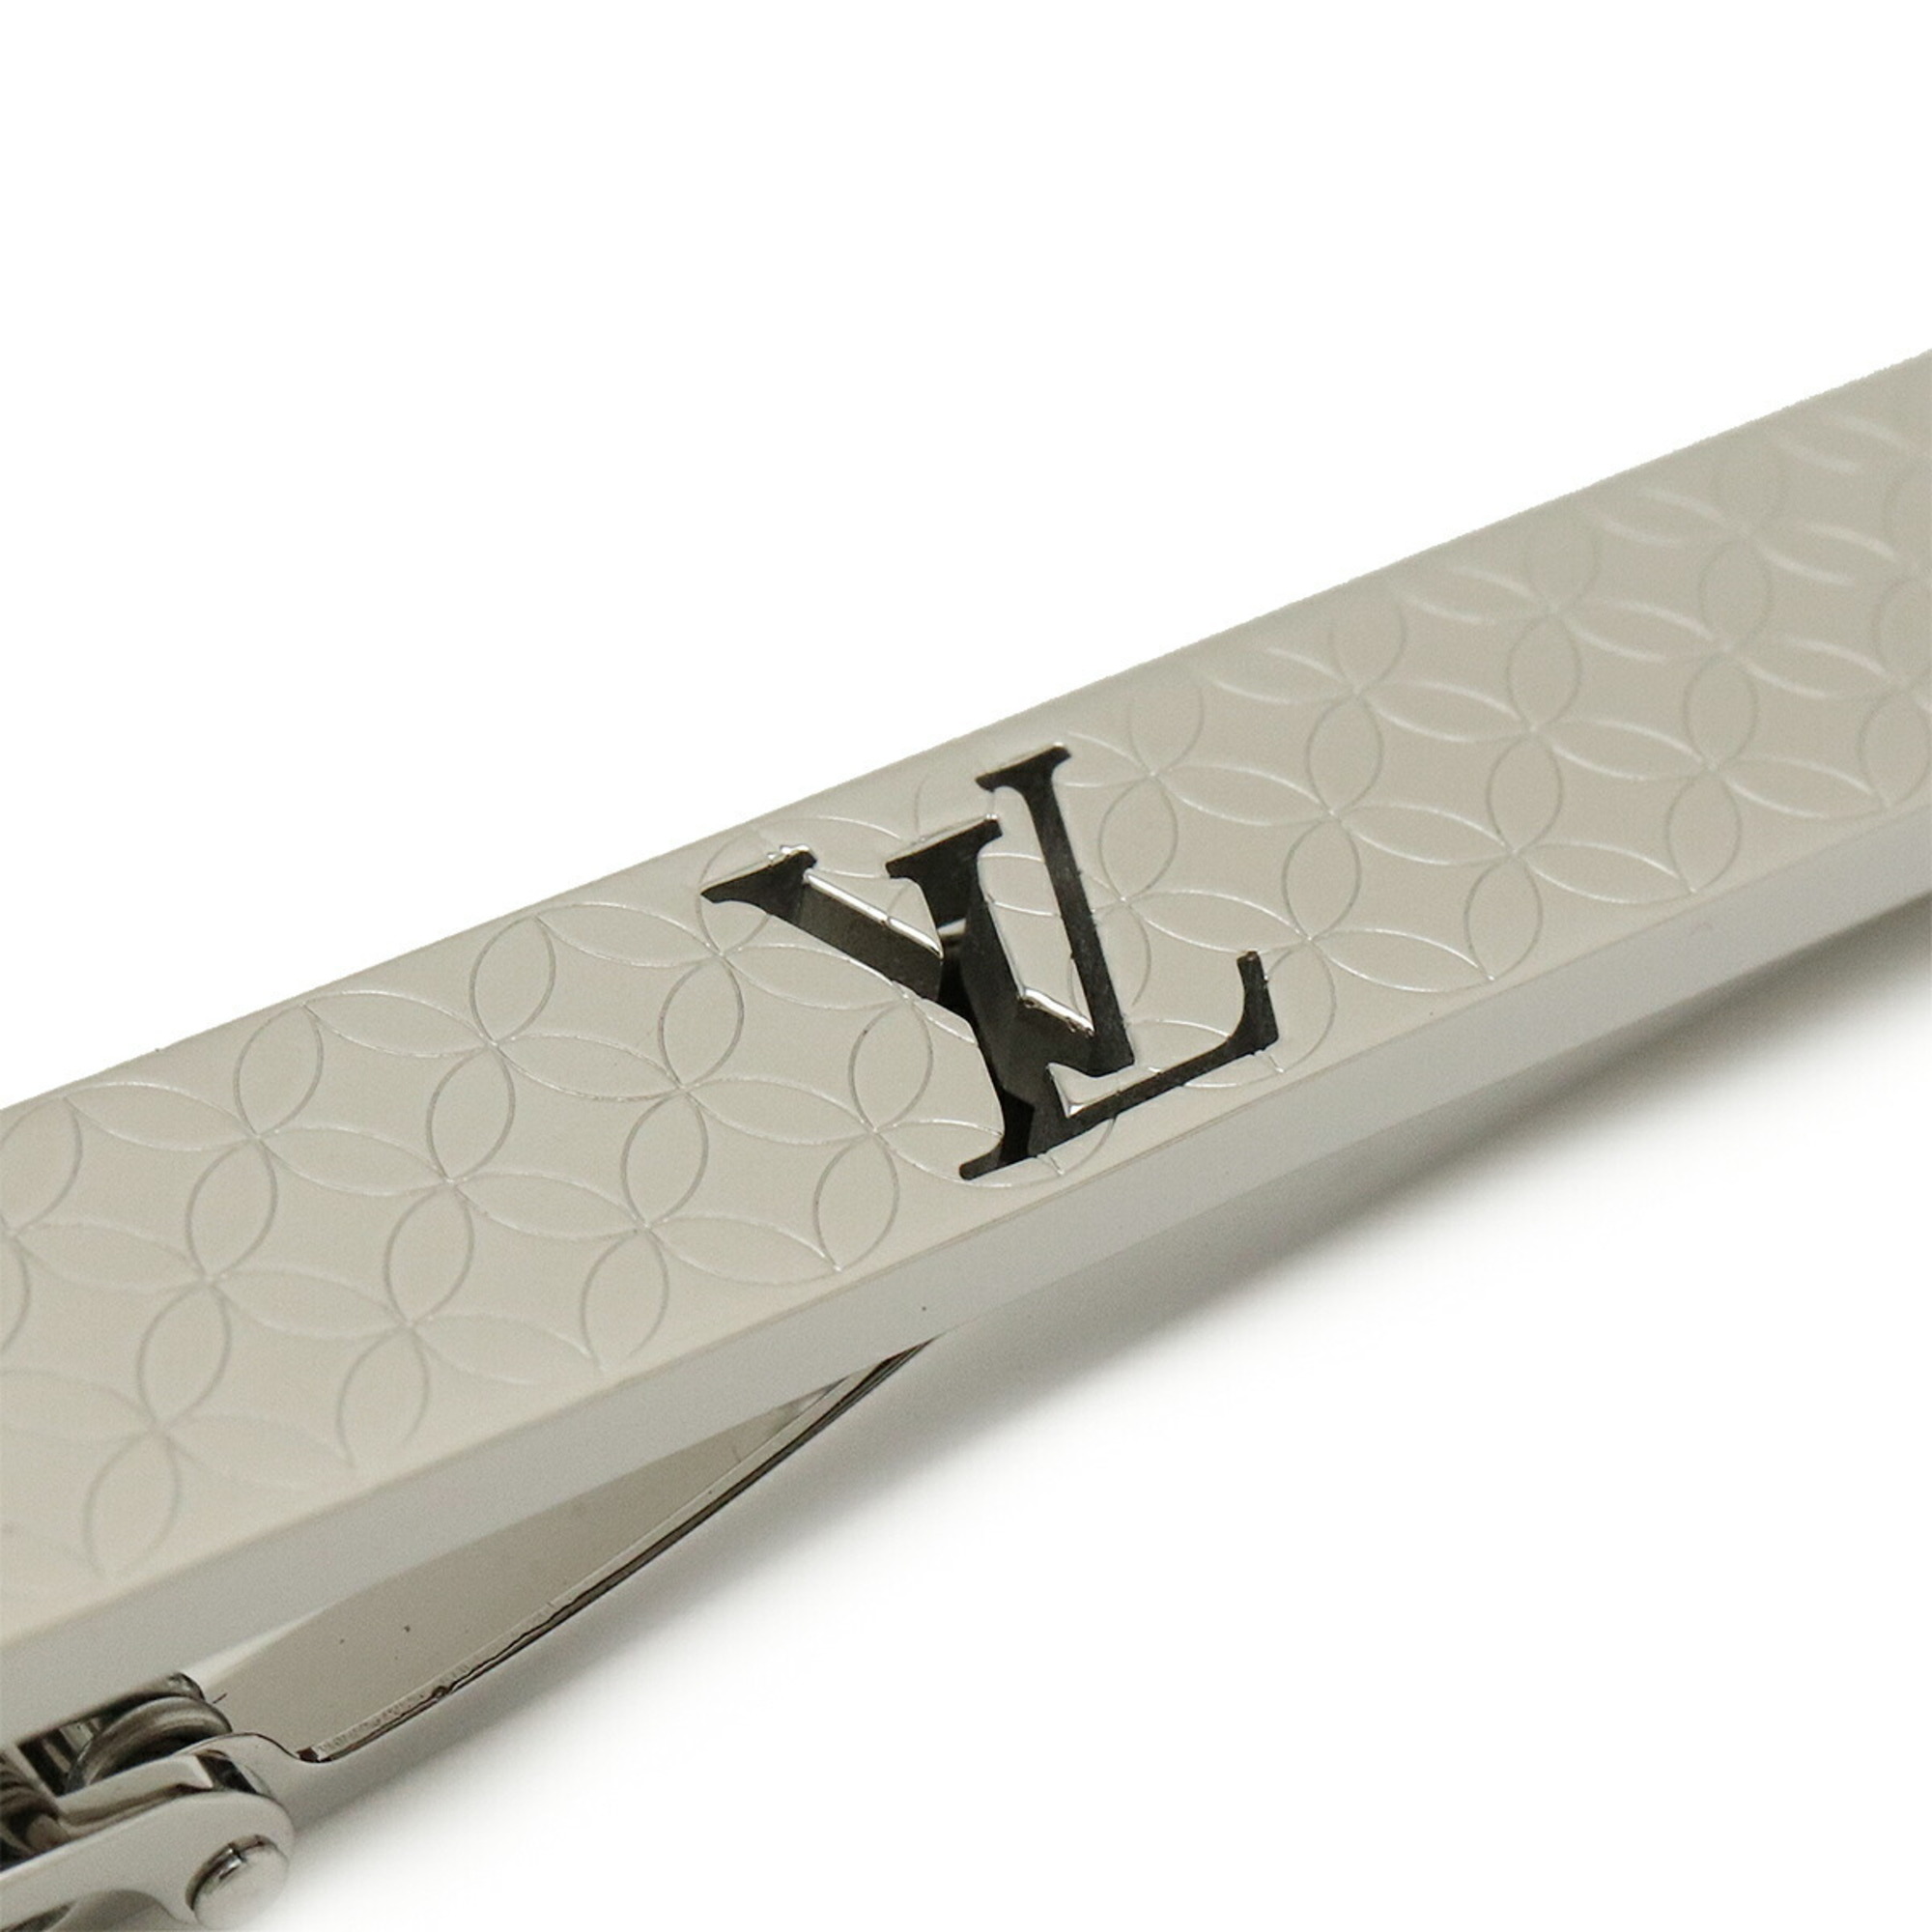 Finished LOUIS VUITTON Louis Vuitton Pants Cravat Champs Elysees Tie Pin Bar Clip Steel Silver M65042